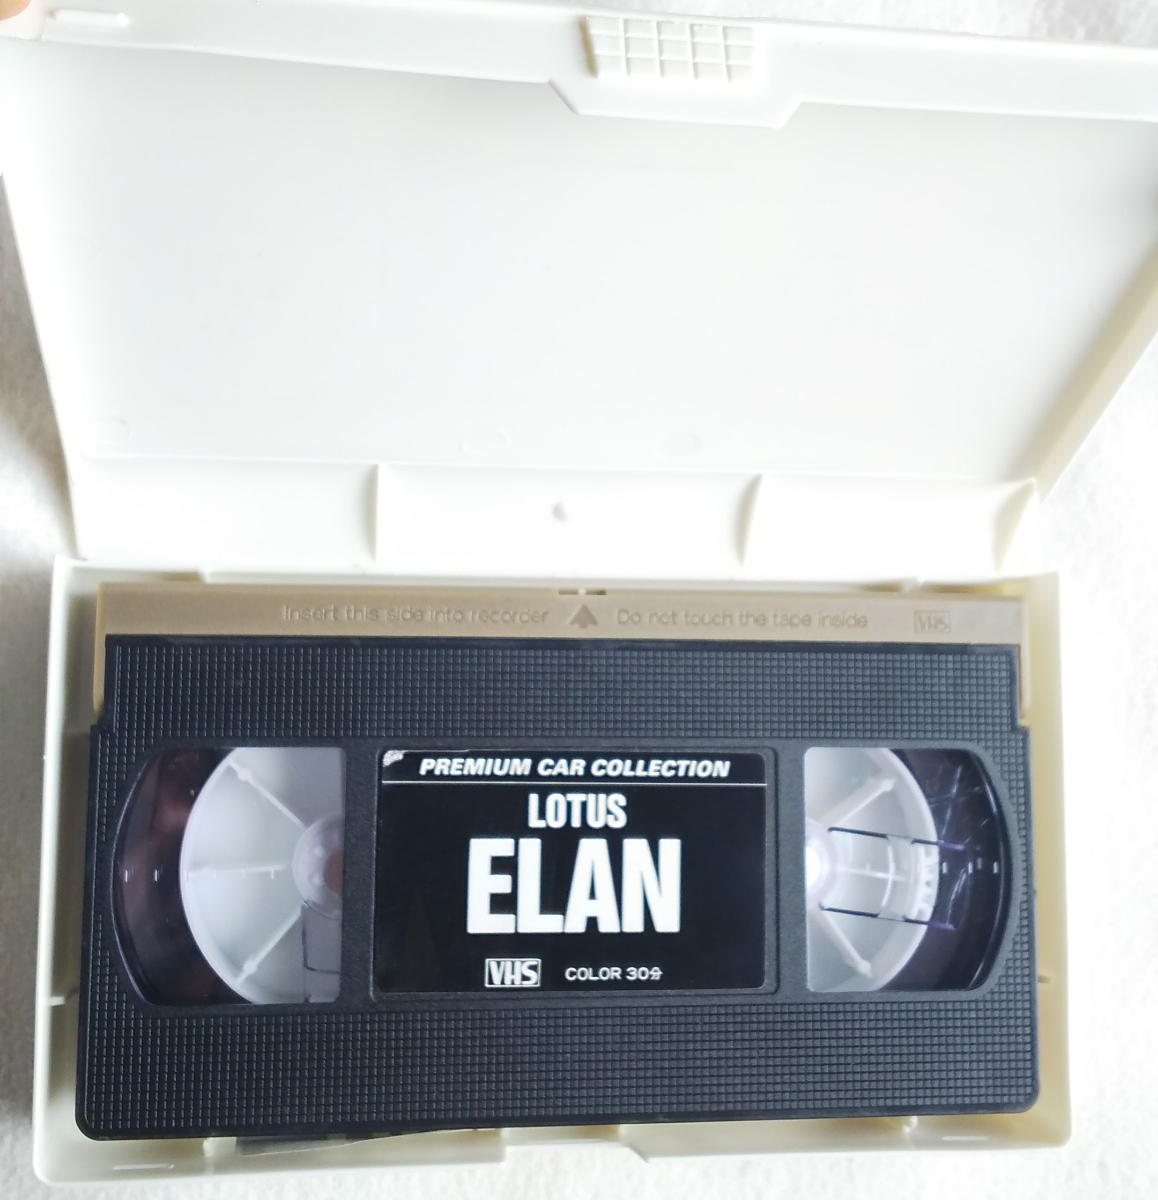  Lotus Elan VHS video 